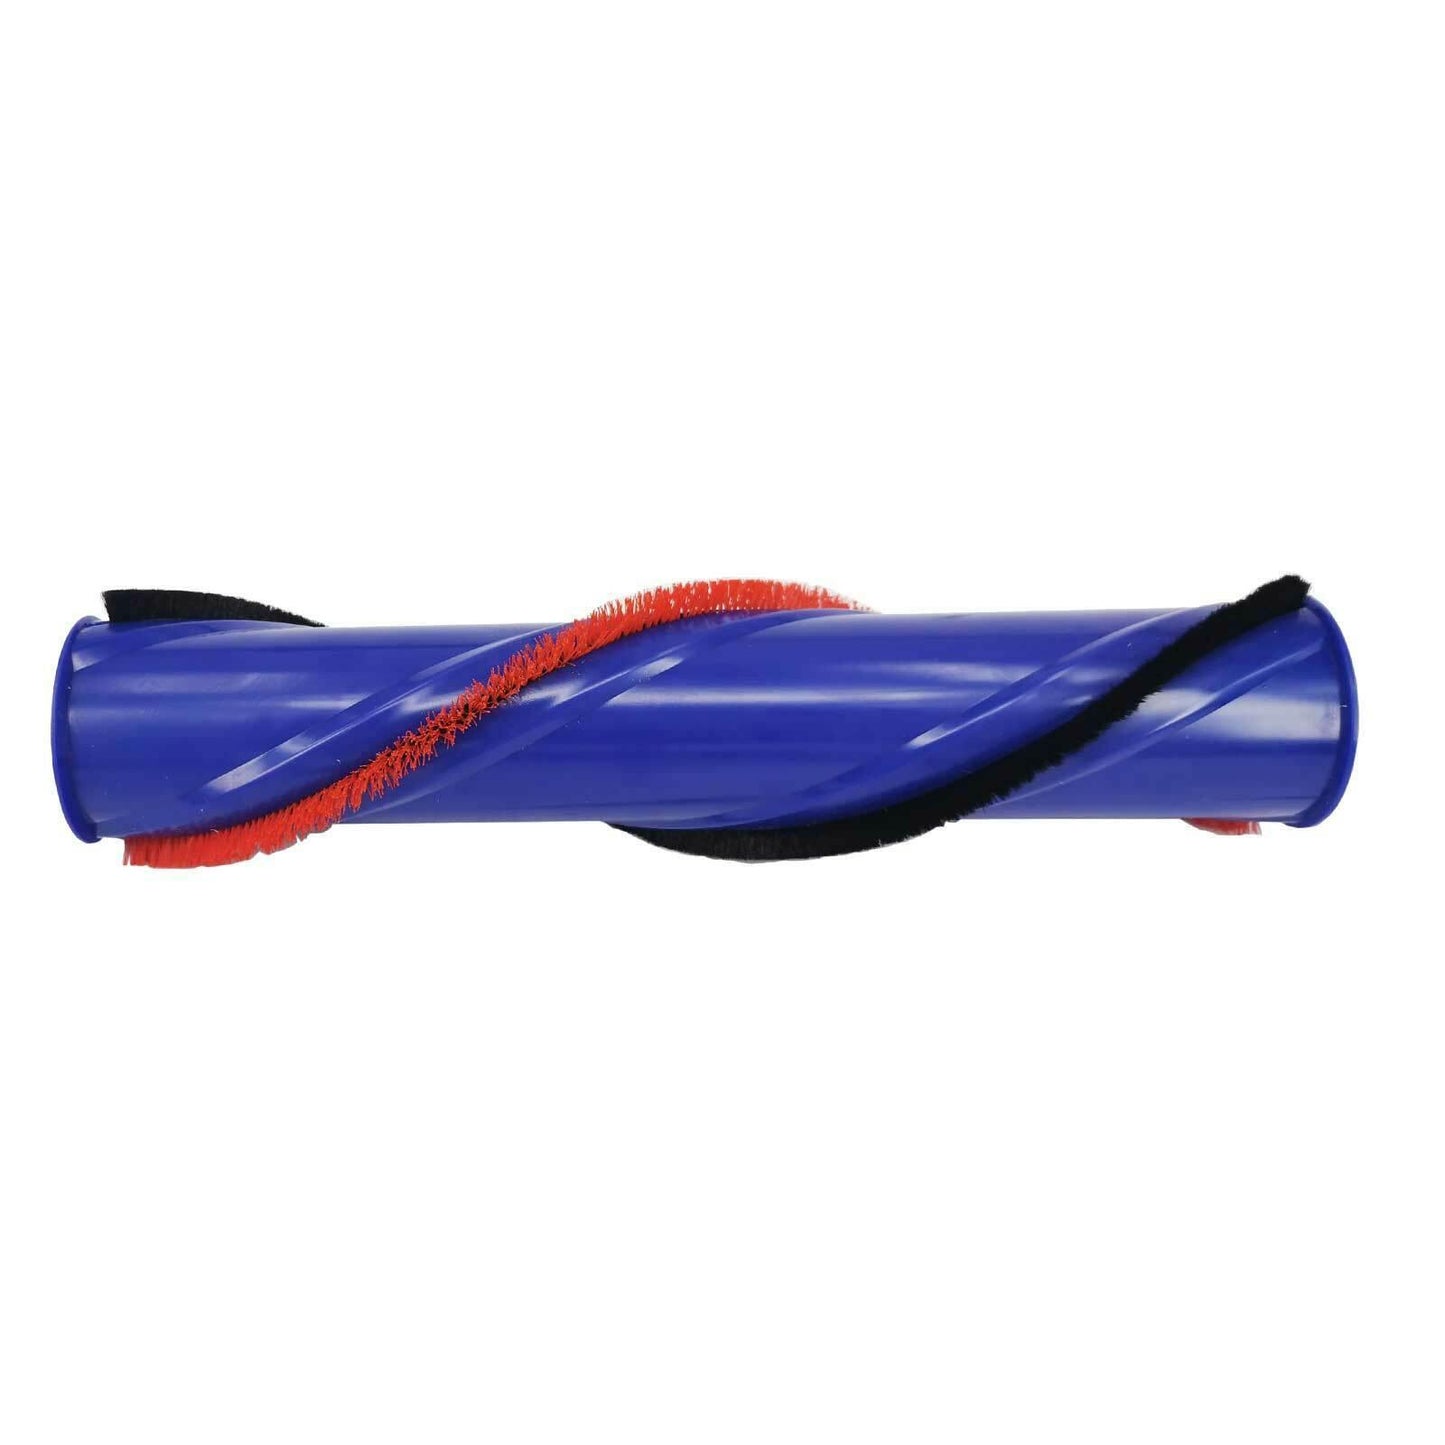 Brushroll Cleaner Head Brush Bar Roller For DYSON V7/V6 Absolute 966821-01 Sparesbarn